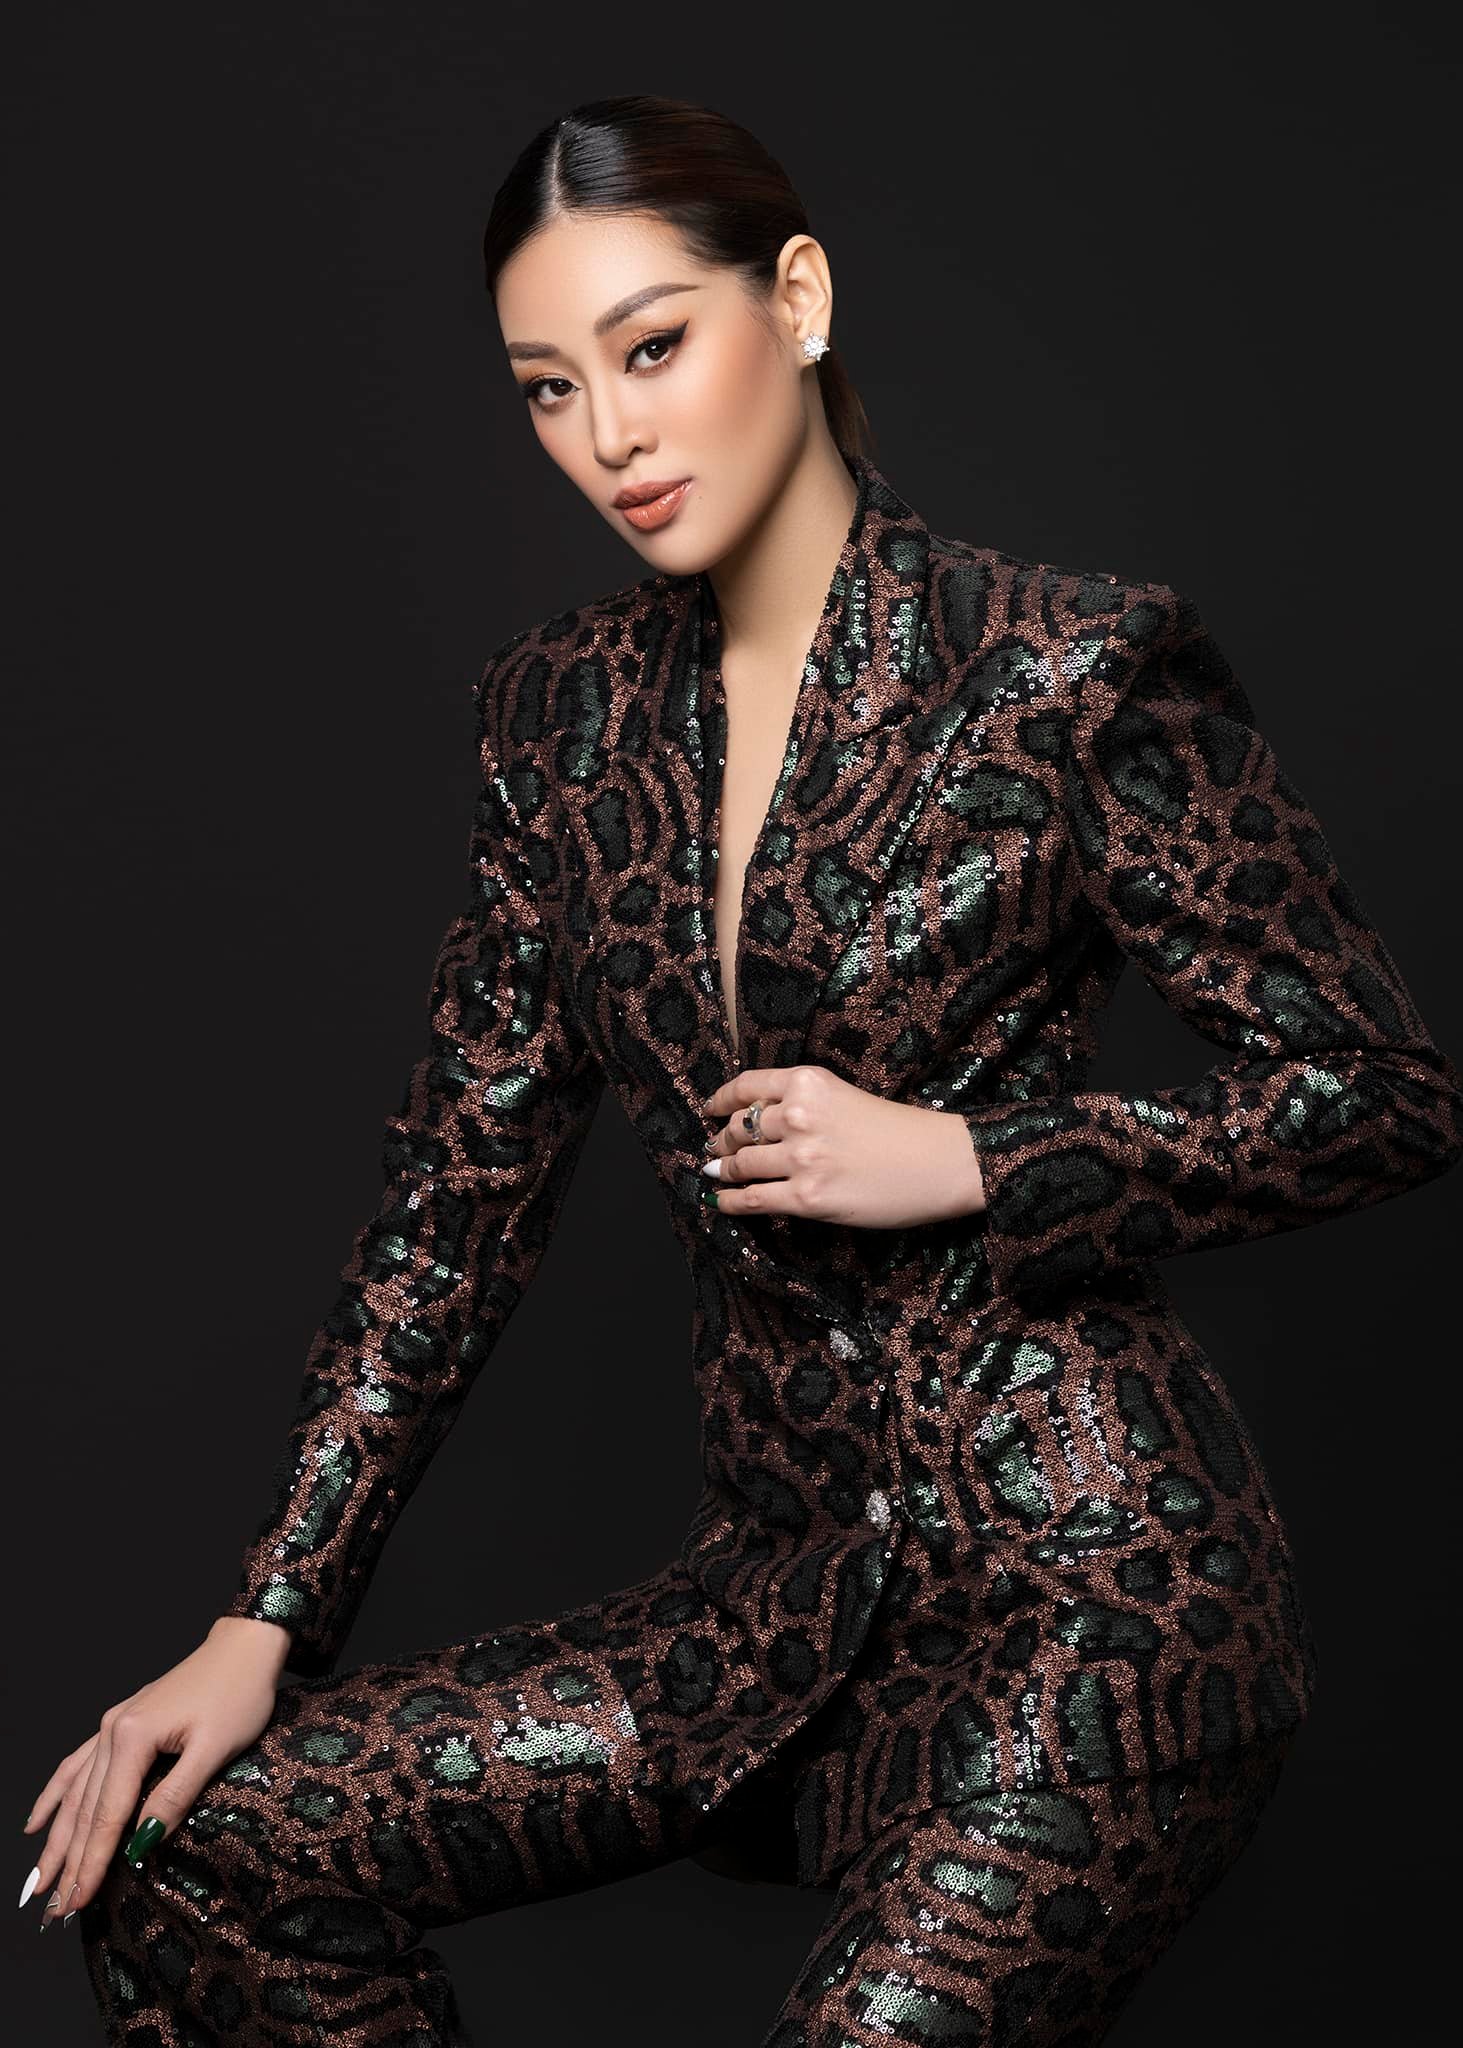 Hoa hậu Khánh Vân mở học viện đào tạo người mẫu